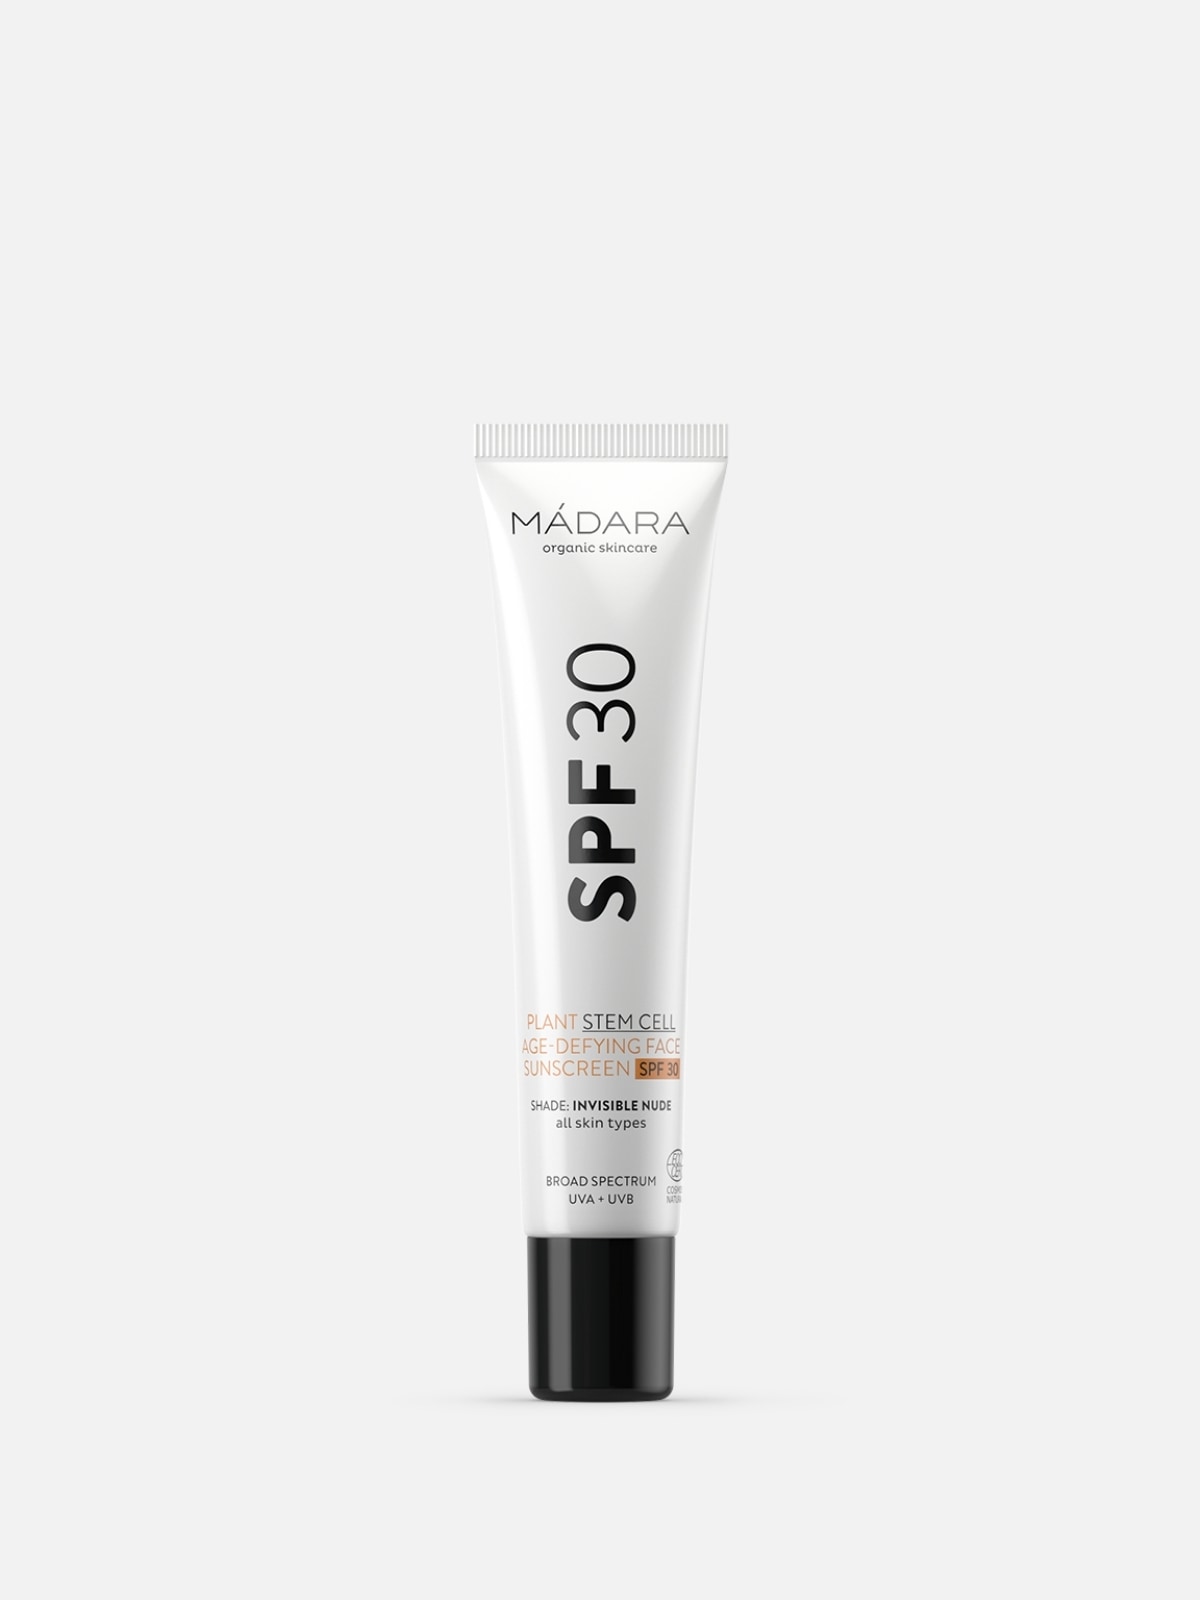 Mádara - Plant Stem Cell Age-Defying Face Sunscreen SPF30 - Crema protezione solare viso con filtro minerale SPF30